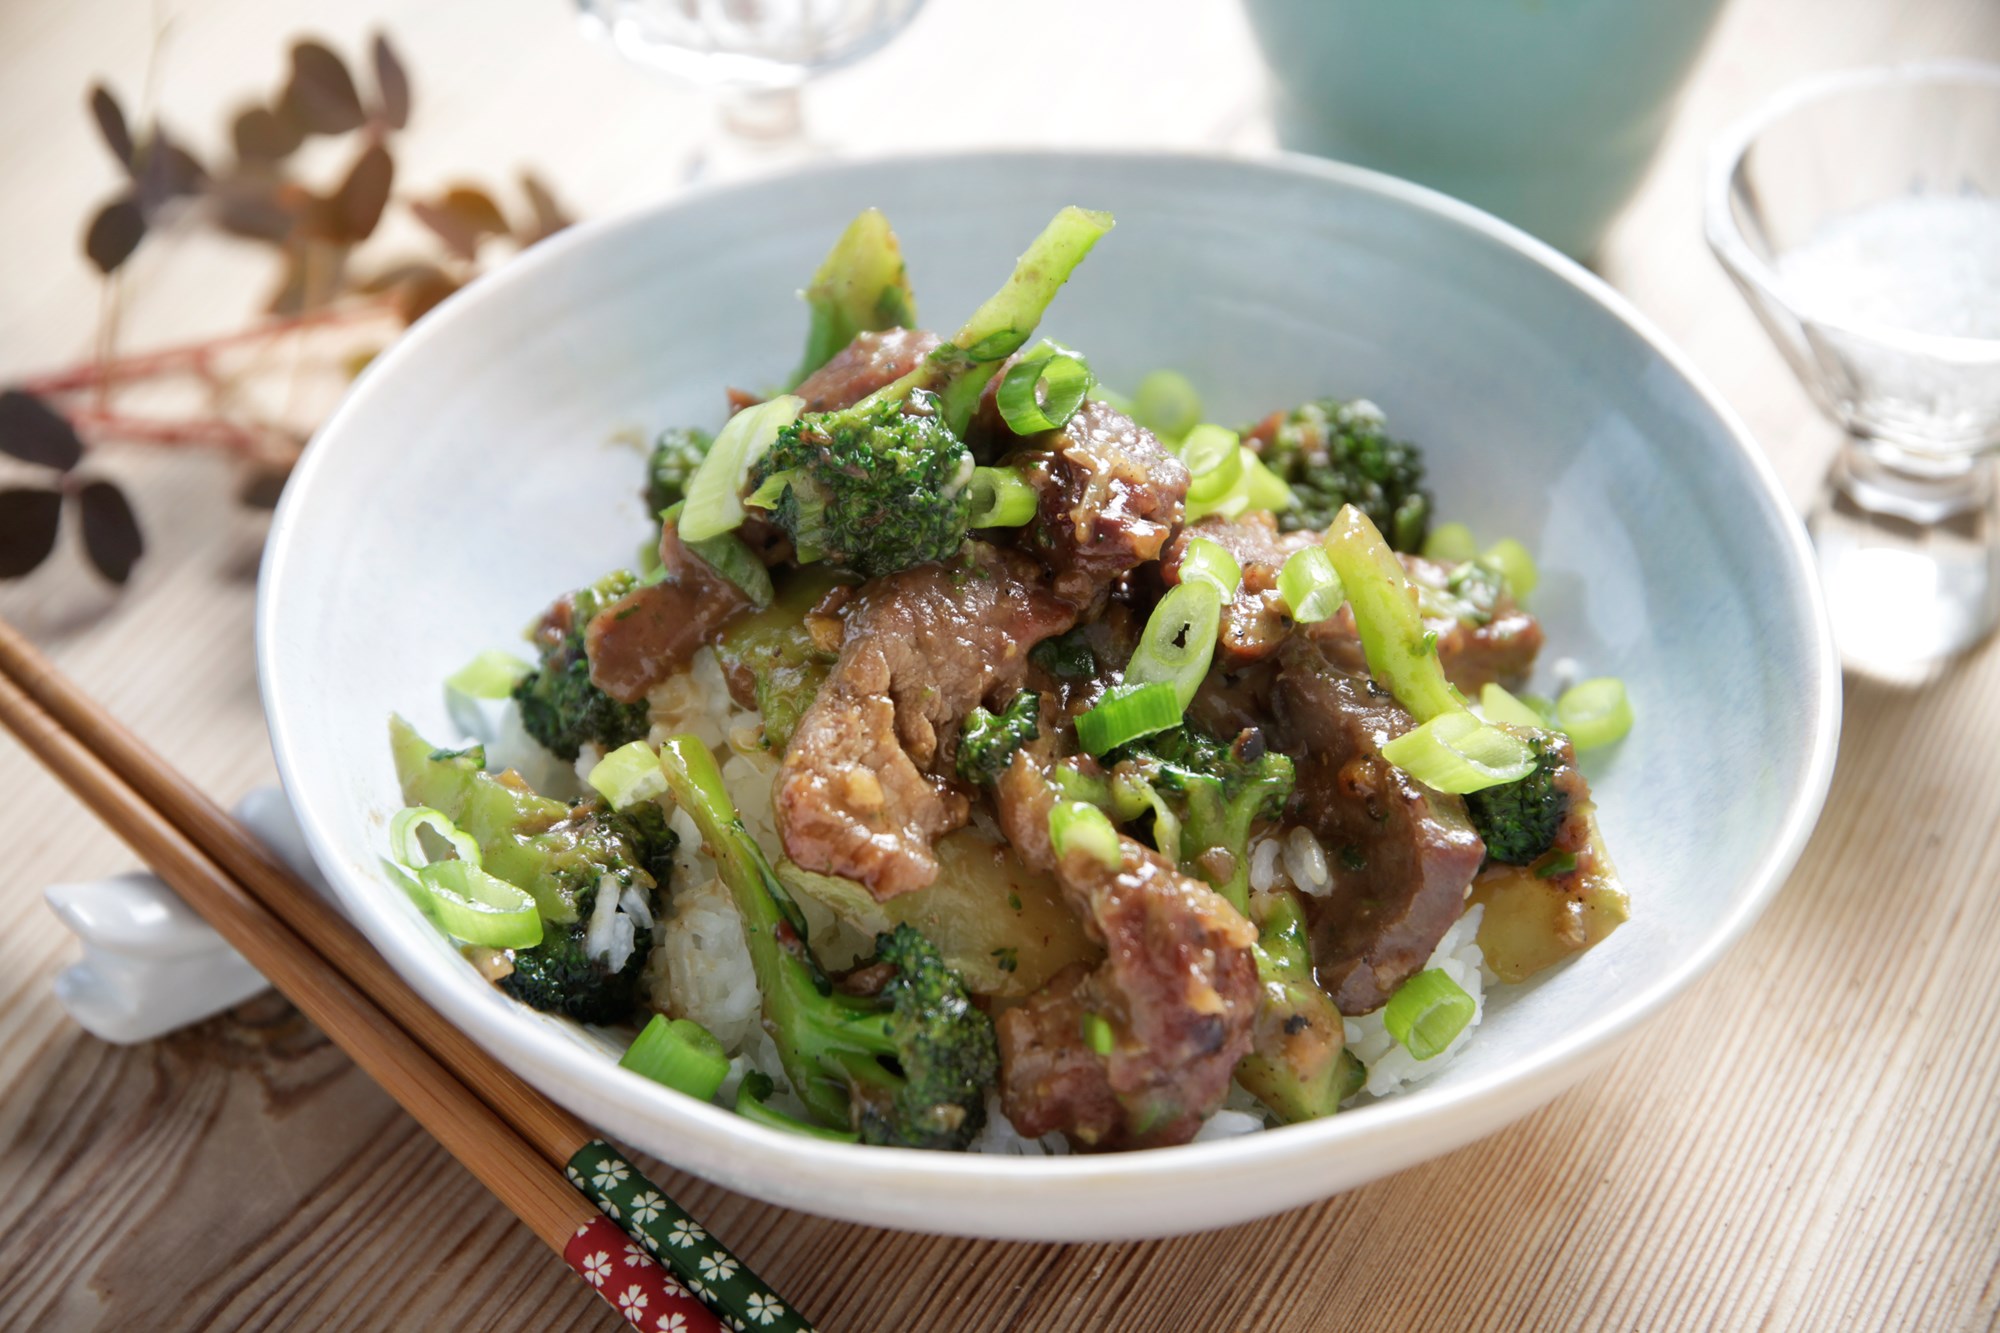 Broccoli og bøf i hoisinsauce med ingefær og ris.